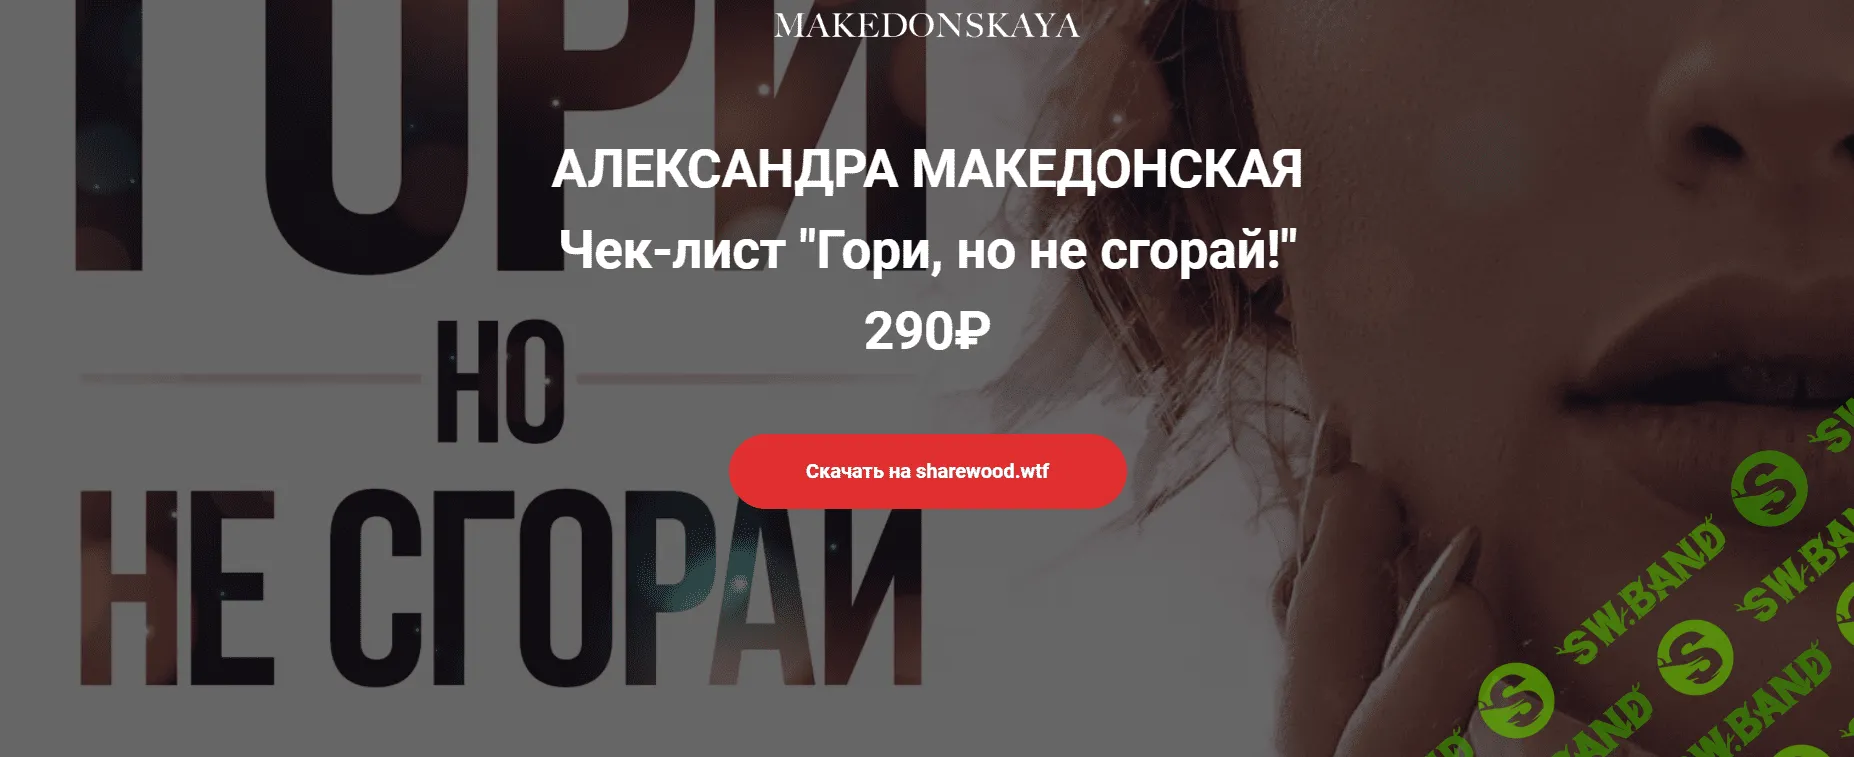 [a.makedonskaya] Гори, но не сгорай